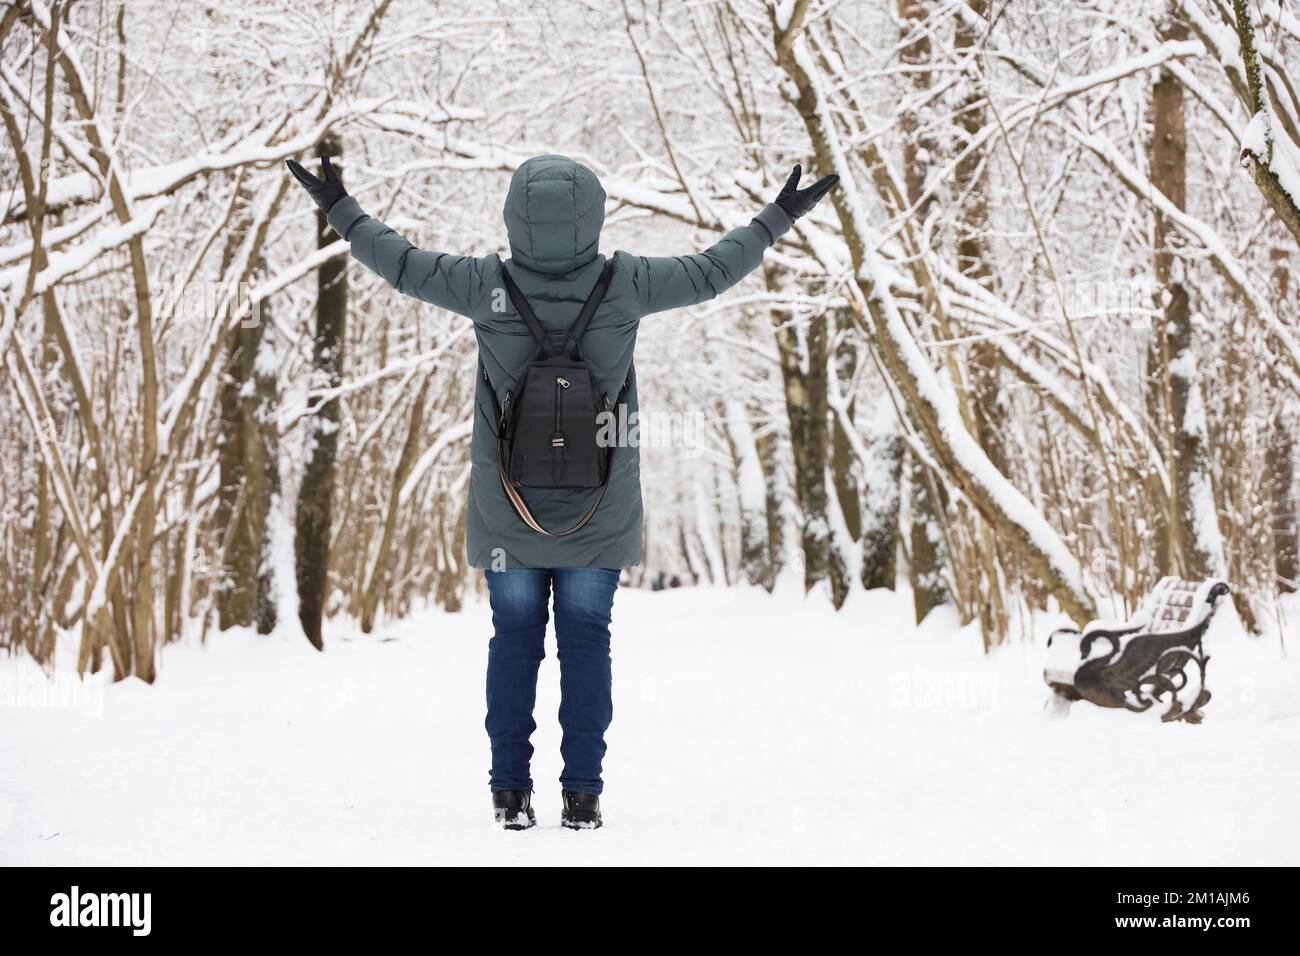 Eine Frau mit Daunenjacke, die mit erhobenen Händen steht und das schneebedeckte Wetter genießt. Freizeit im Winterpark, kalte Jahreszeit Stockfoto